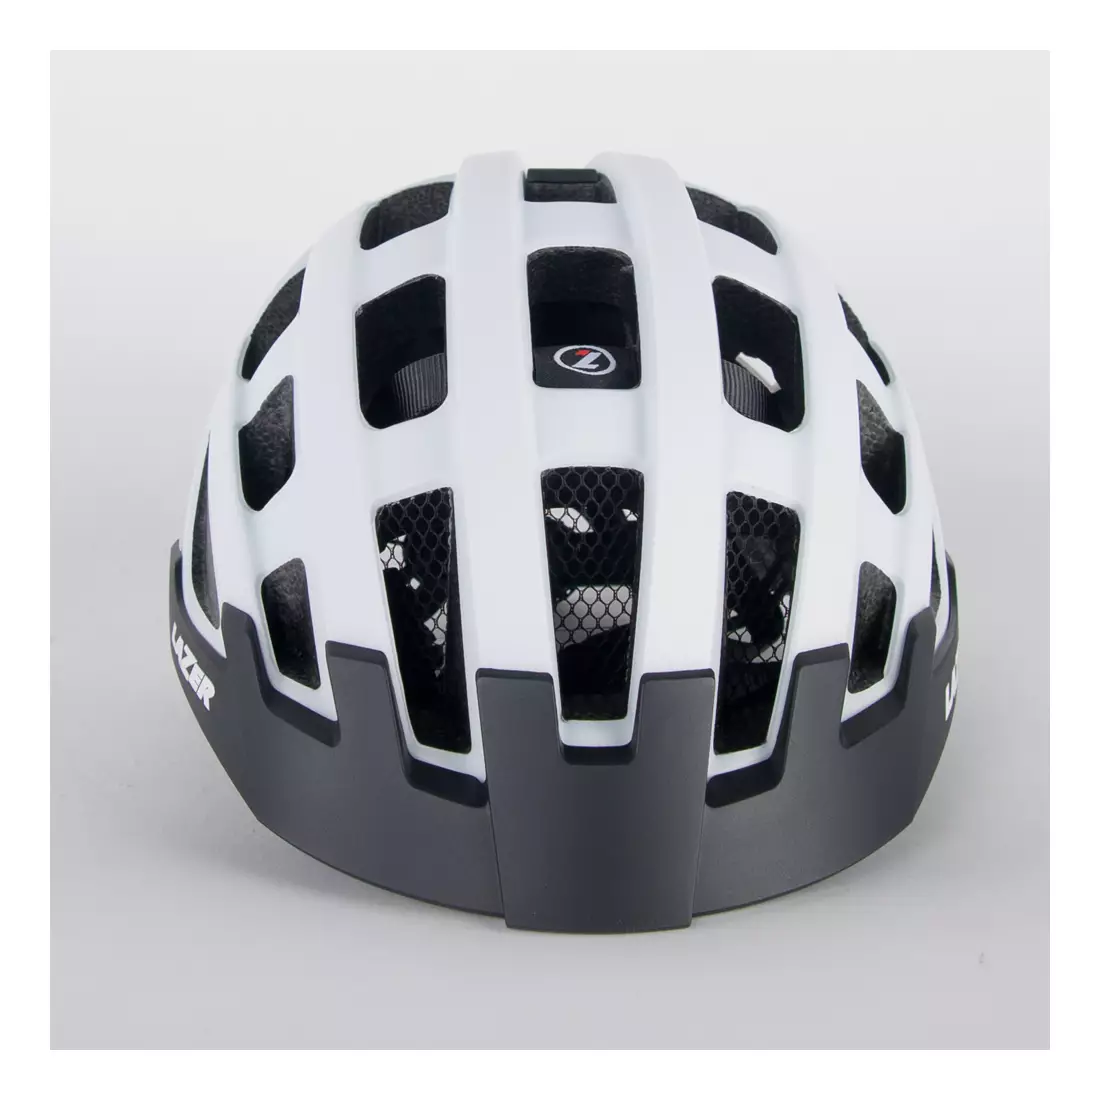 LAZER dámská cyklistická helma Petit DLX Mřížka + Led bílá matná